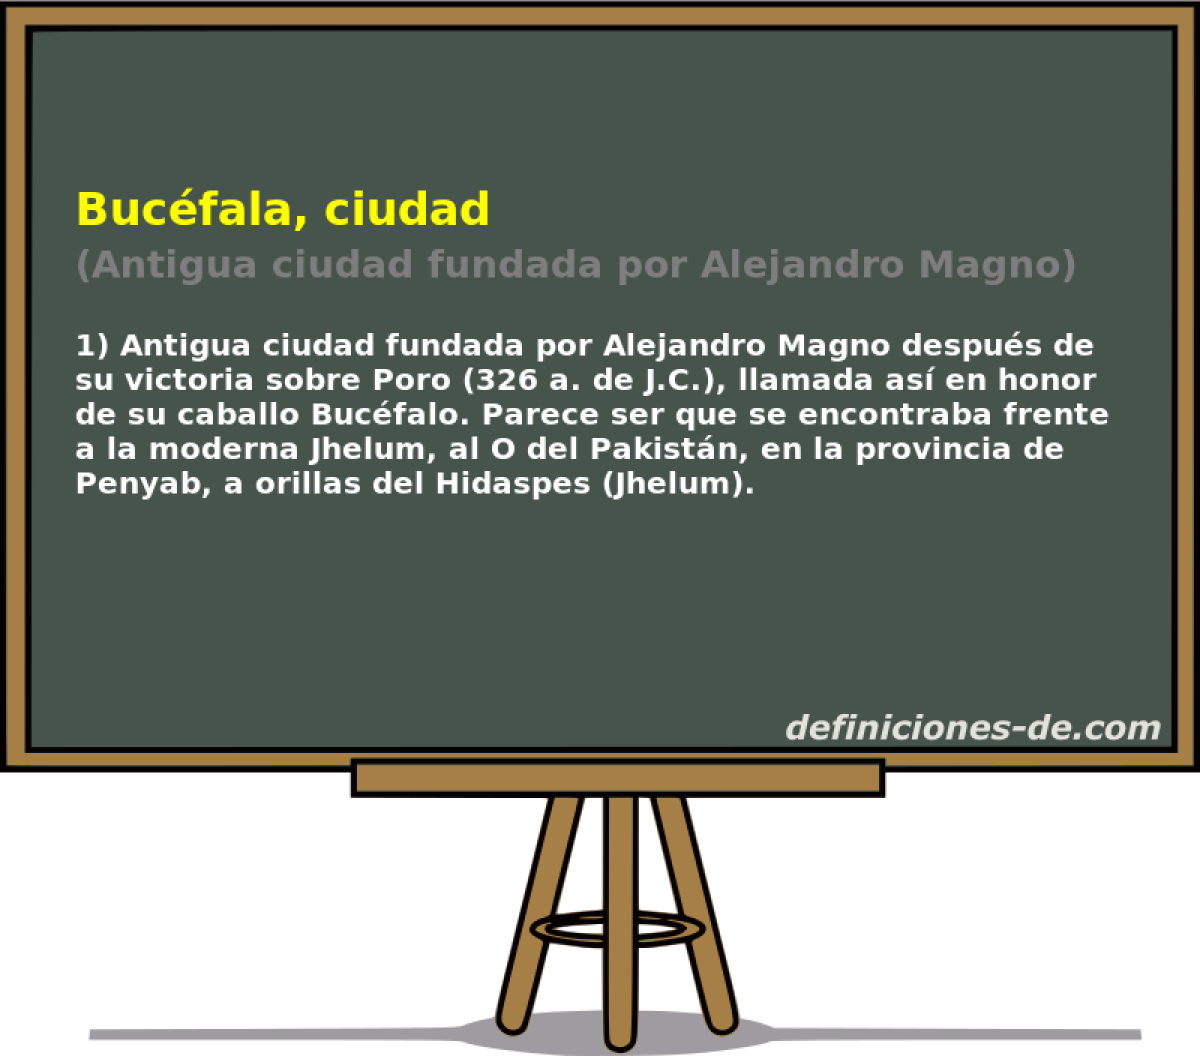 Bucfala, ciudad (Antigua ciudad fundada por Alejandro Magno)